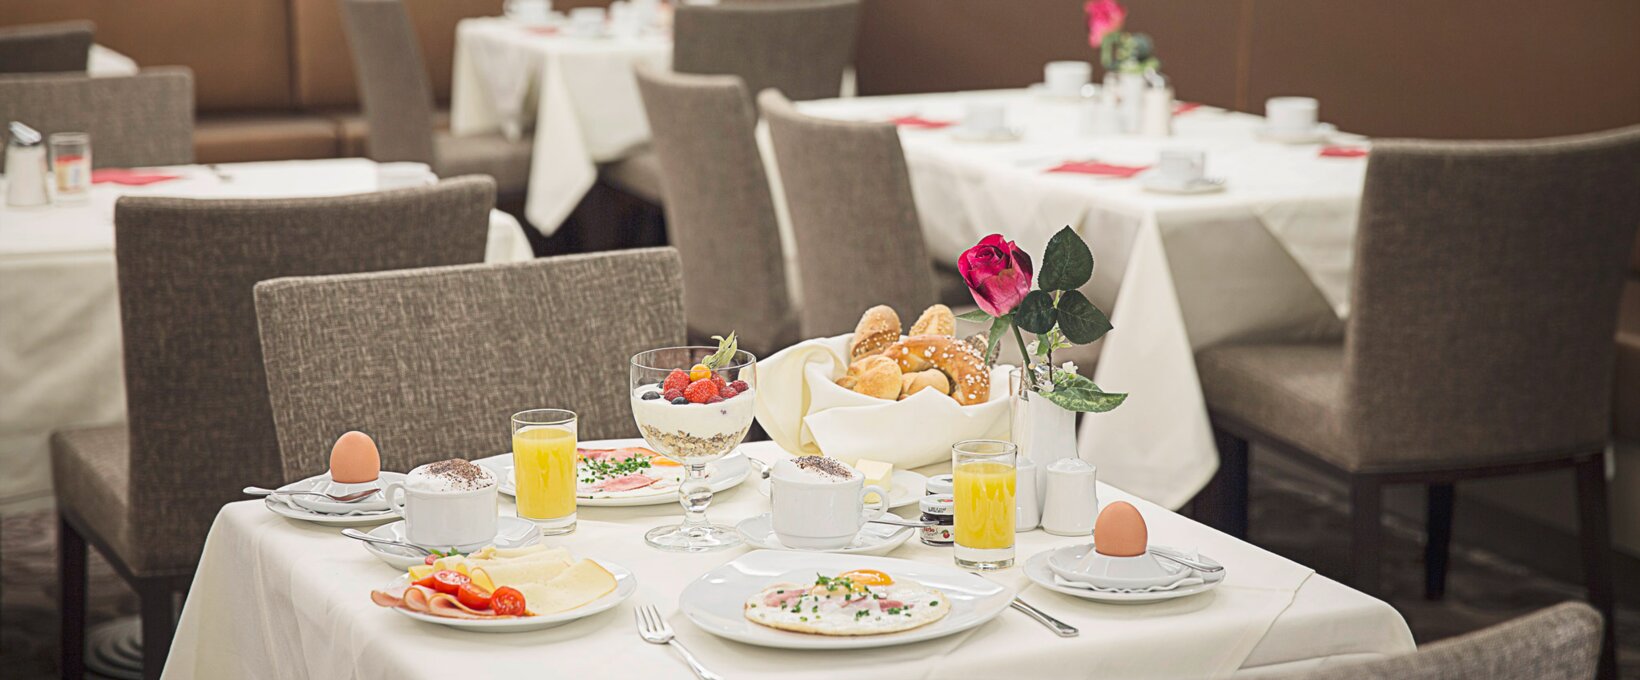 Frühstückstisch mit Ei und Brötchen | Hotel Schillerpark in Linz